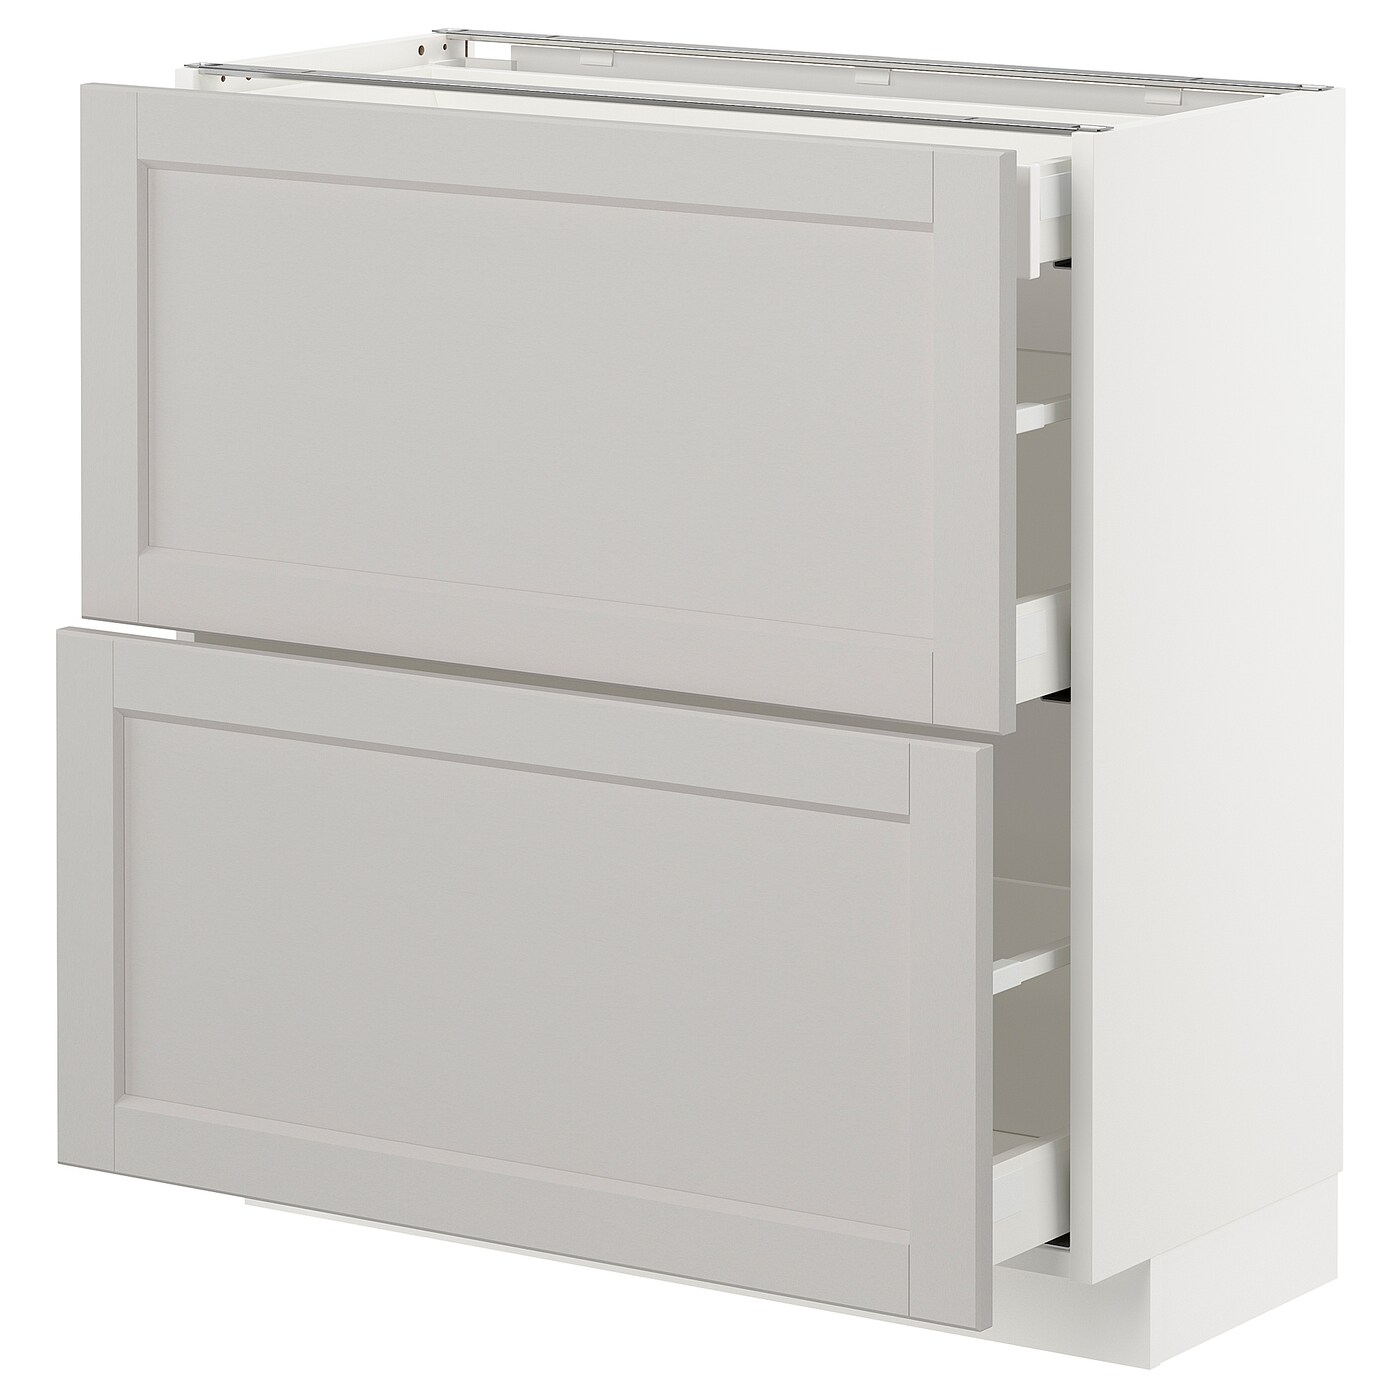 Напольный кухонный шкаф  - IKEA METOD MAXIMERA, 88x39,5x80см, белый/светло-серый, МЕТОД МАКСИМЕРА ИКЕА